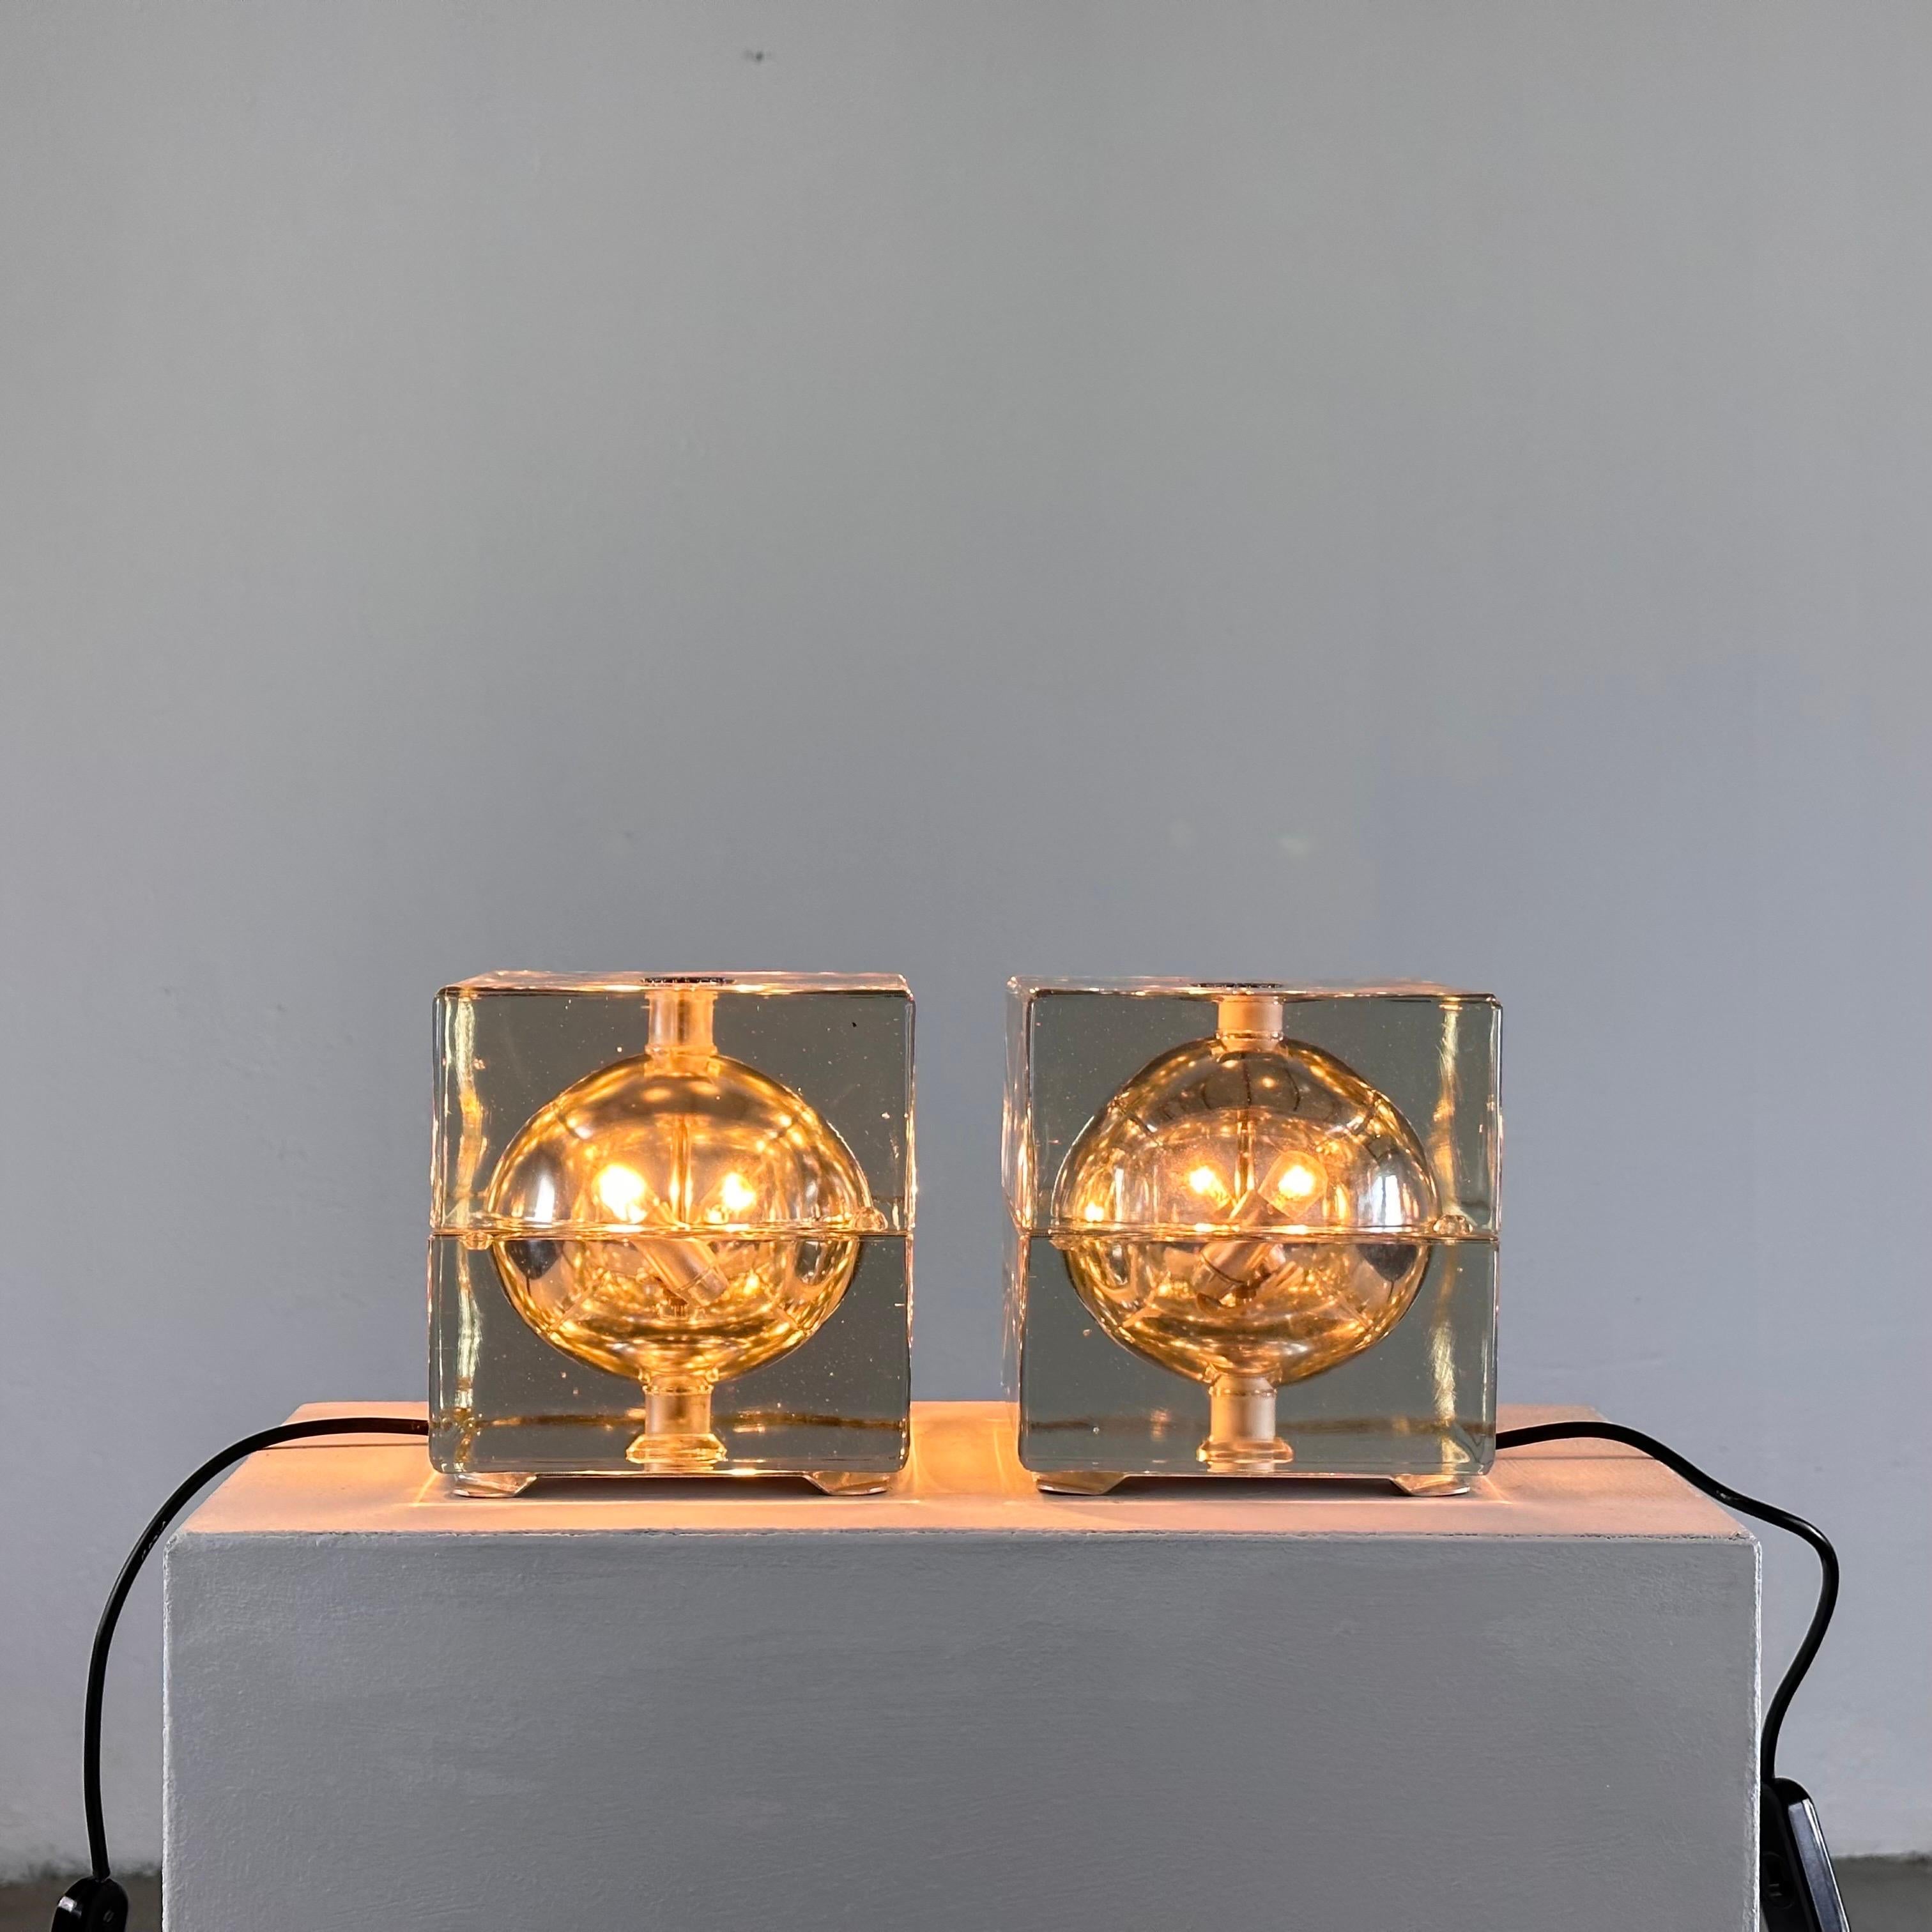 Illuminez votre espace avec le charme emblématique du milieu du siècle incarné par cette remarquable paire de lampes de table Cubosfera, conçue par le légendaire Alessandro Mendini pour Fidenza Vetraria dans les années 1960. Ces pièces intemporelles